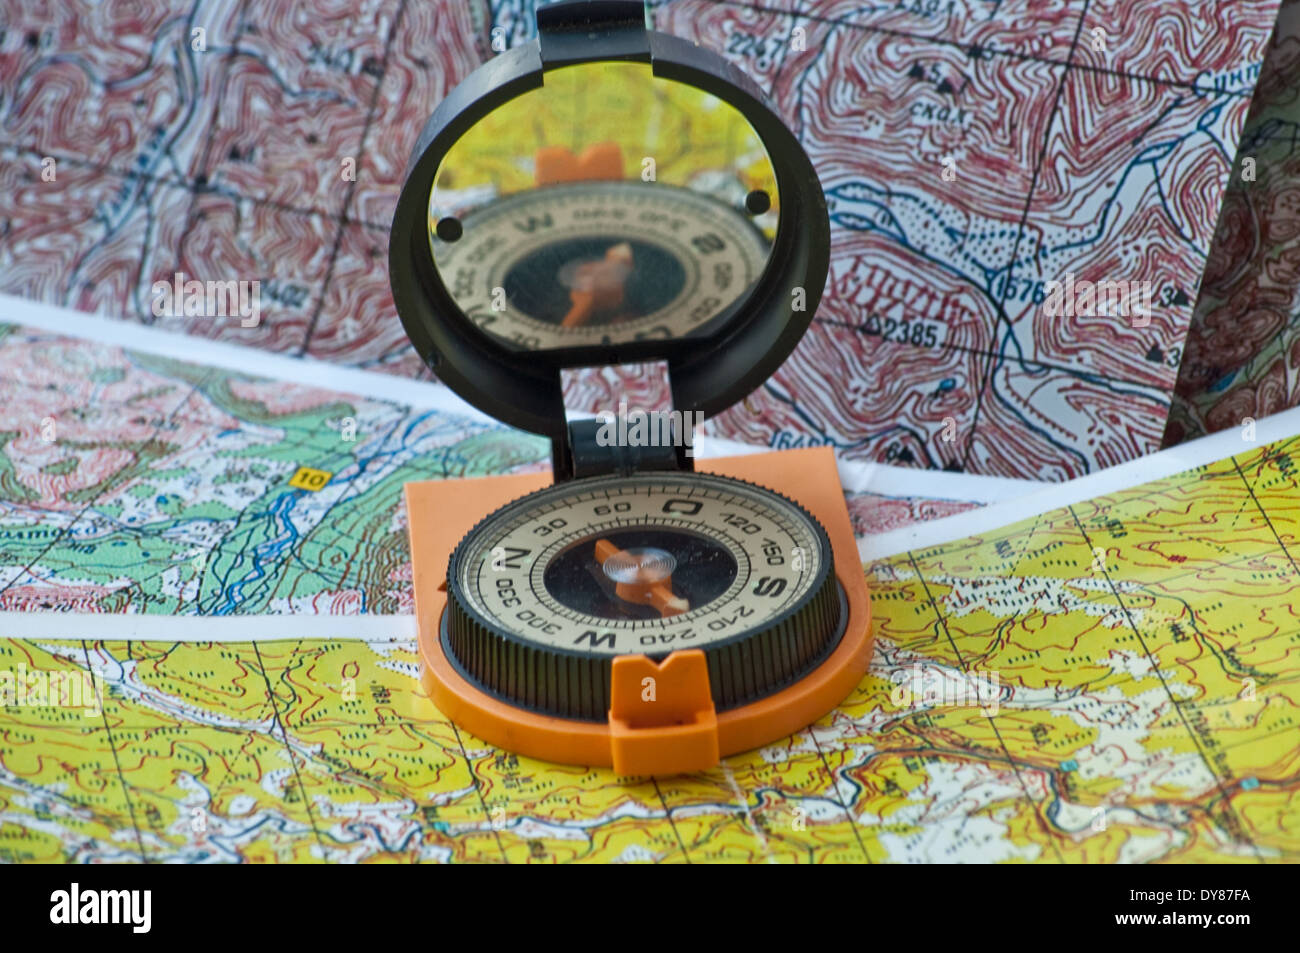 Compas magnétique dans un boîtier noir-rouge, équipé d'un miroir, est sur les cartes topographiques. Banque D'Images